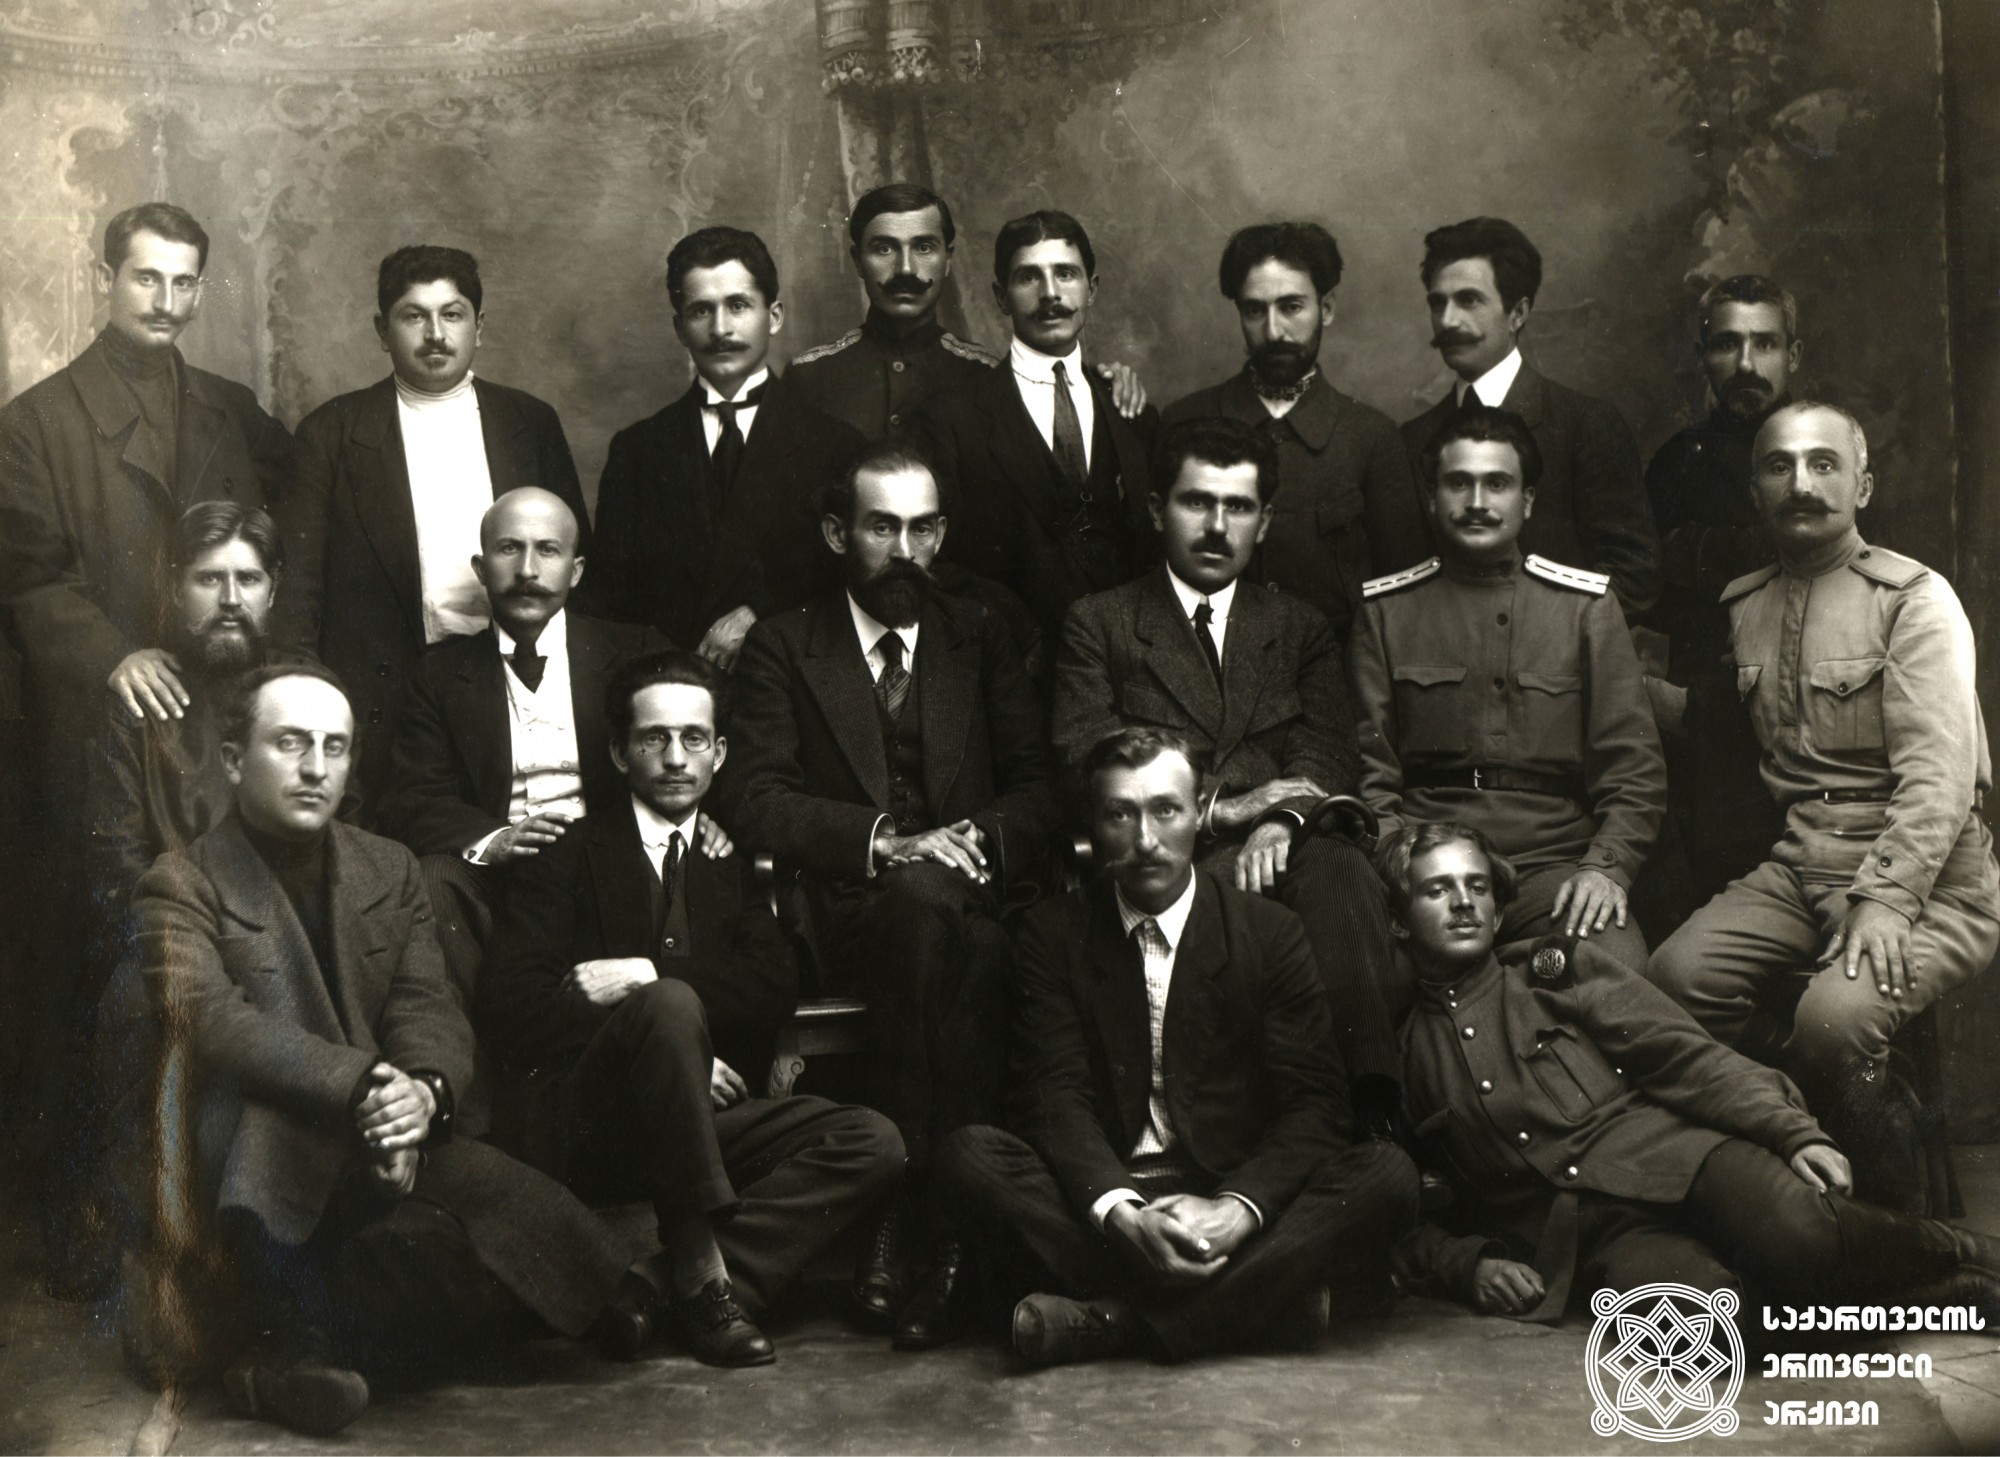 სოხუმელი სოციალ-დემოკრატების ჯგუფი. ცენტრში: მარცხნივ - ბენია ჩხიკვიშვილი, მარჯვნივ - იოანის ფაშალიდისი. <br>
1918 წელი. <br>
Group of Social Democrats from Sokhumi. In the center: on the left – Benia Chkhikvishvili, on the right - Ioannis Passalidis. <br>
1918.